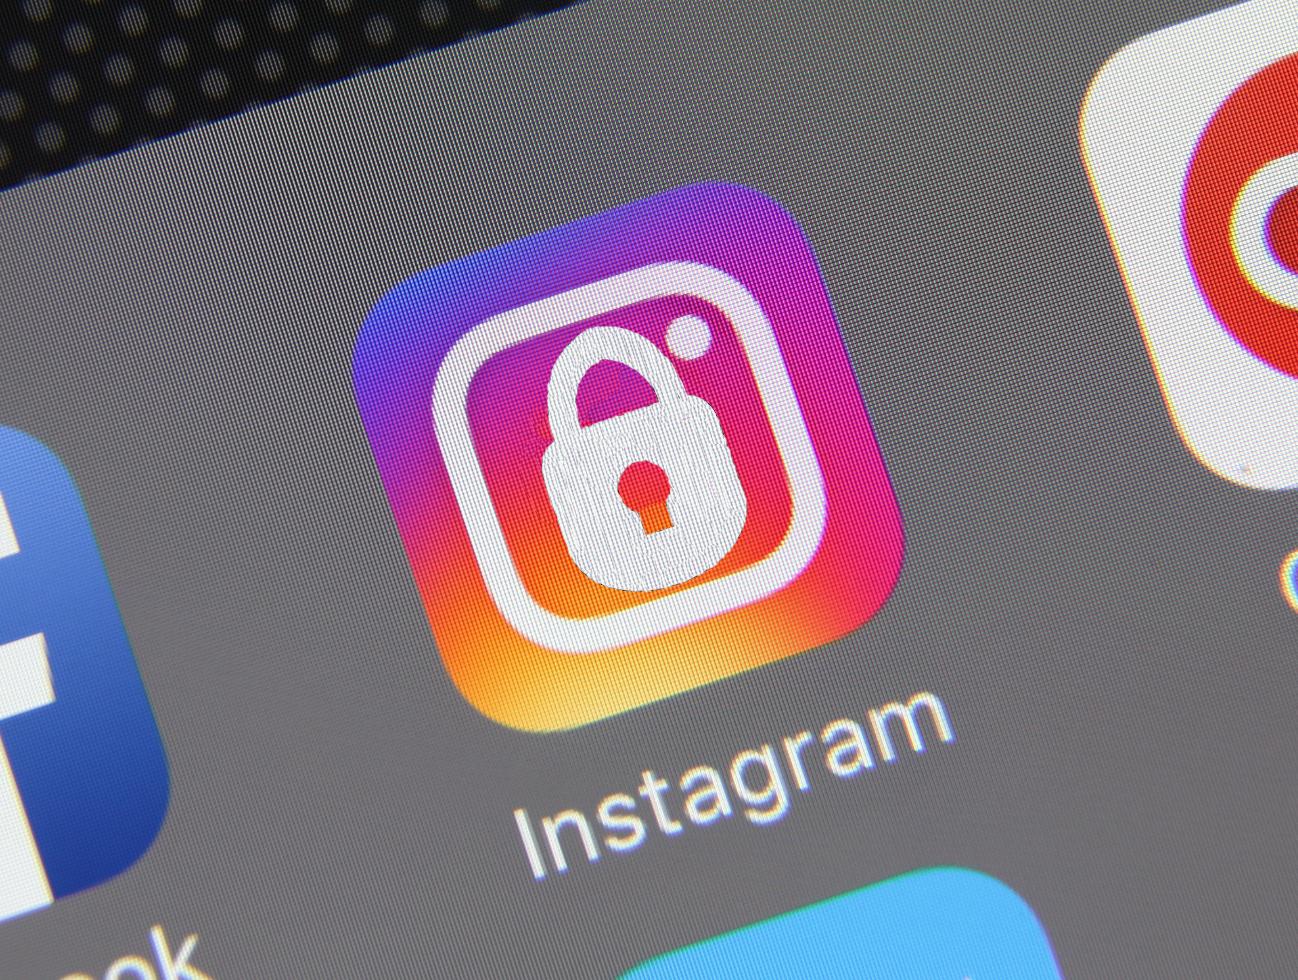 Comment un hacker va pirater un compte Instagram ?